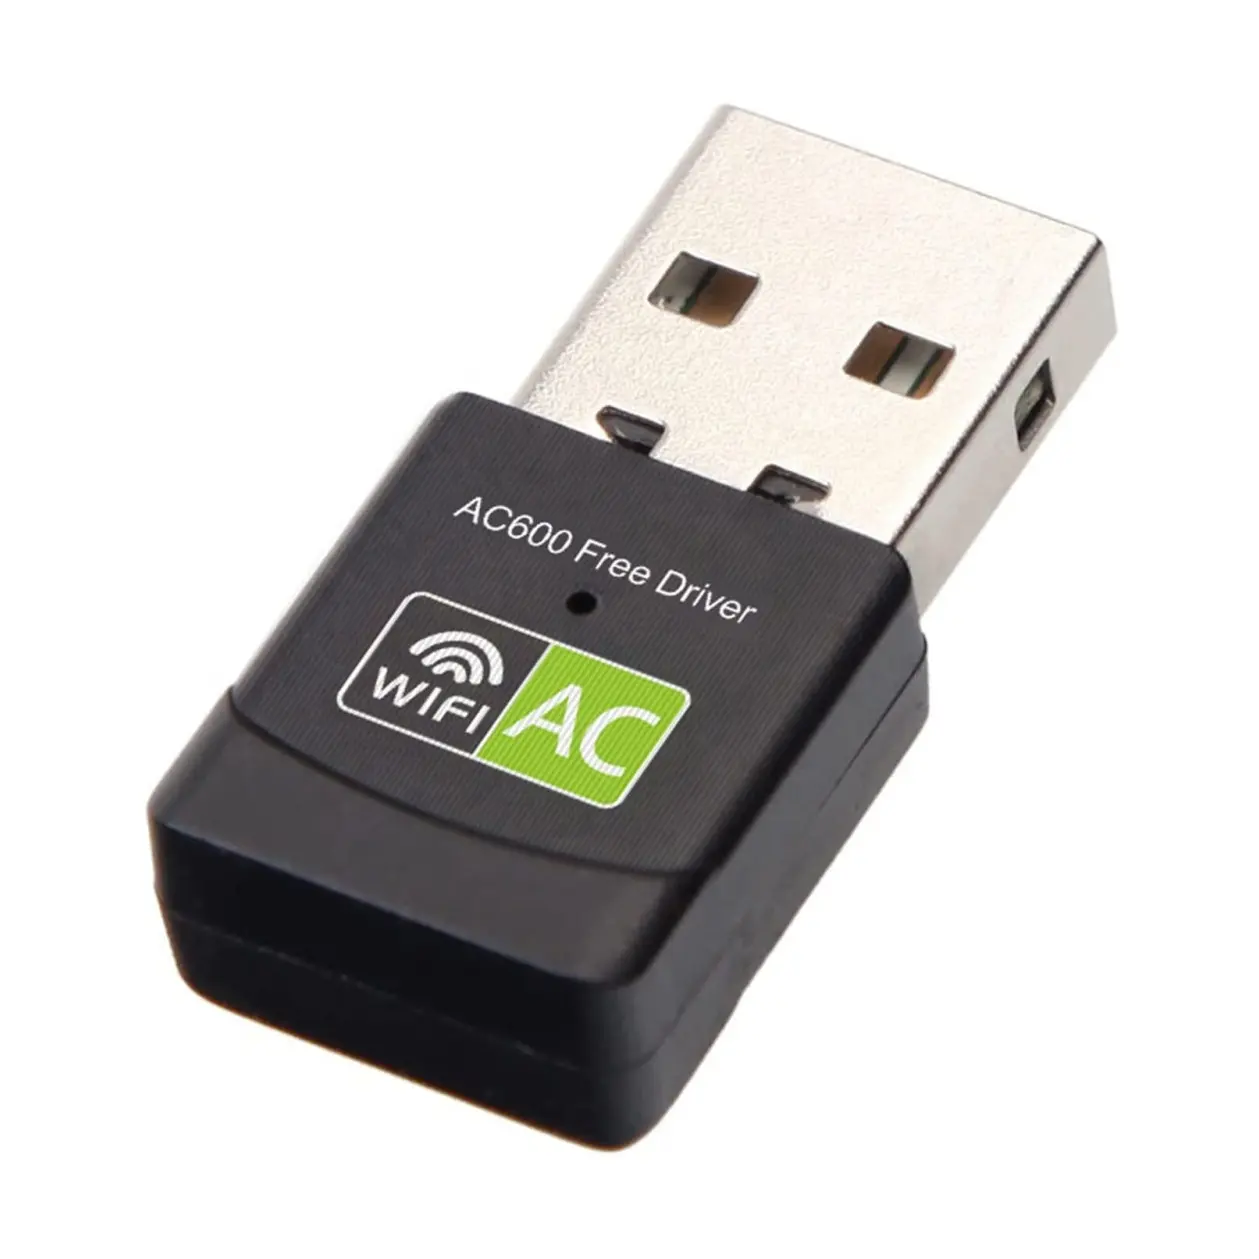 سائق حر USB WiFi محول للكمبيوتر ، AC600M USB WiFi دونغل 802.11ac اللاسلكية محول الشبكة مع المزدوج الفرقة 2.4GHz/5Ghz